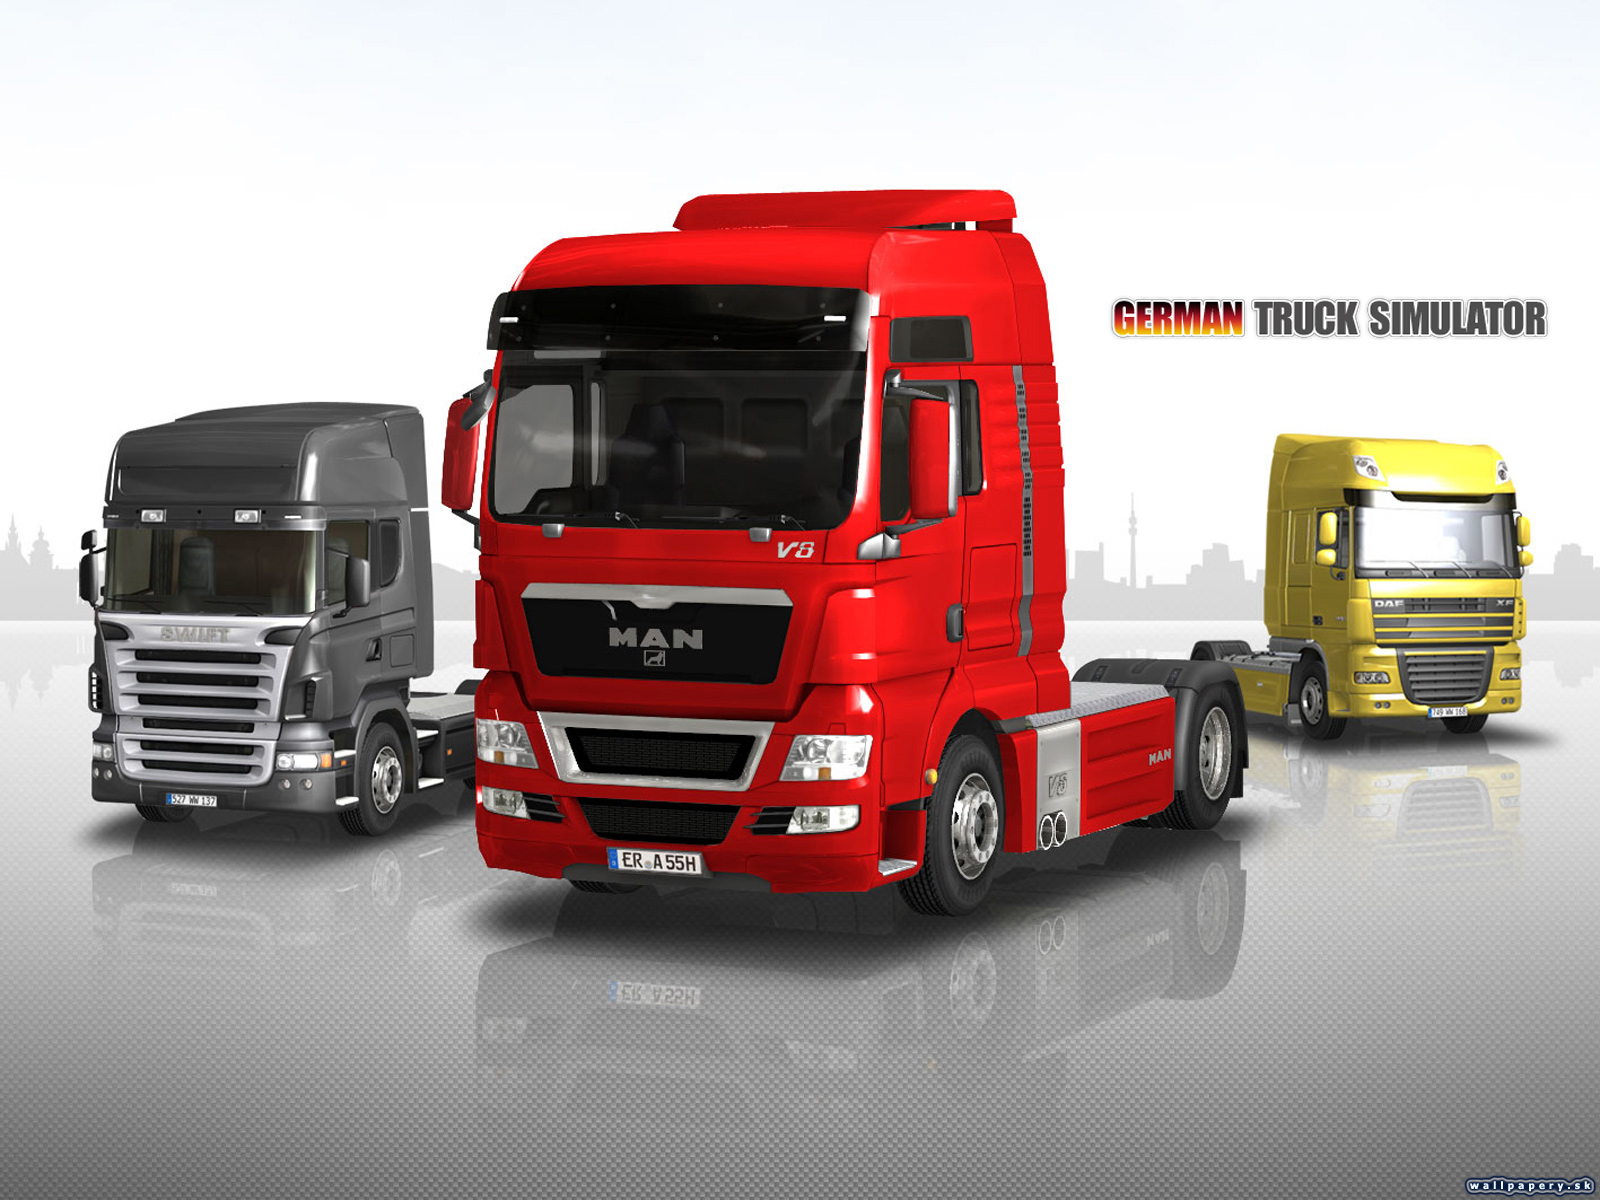 German Truck Simulator - wallpaper 3